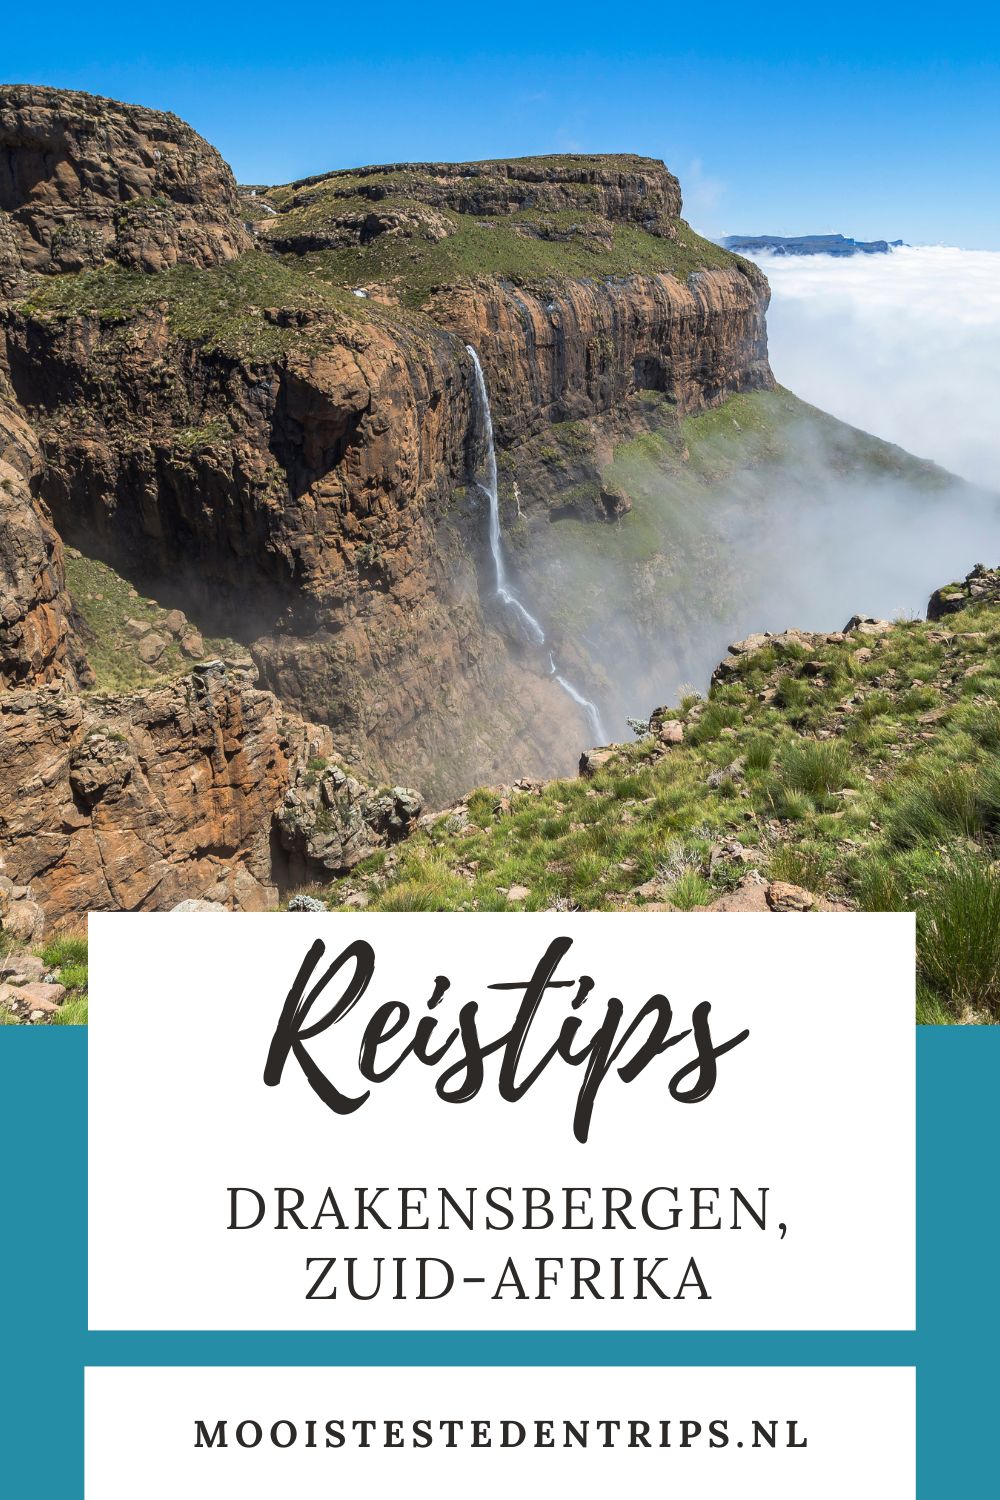 Zuid-Afrika: Drakensbergen, Sani Pass en Lesotho. Ontdek de mooiste bezienswaardigheden in Drakensbergen, Zuid-Afrika | Mooistestedentrips.nl